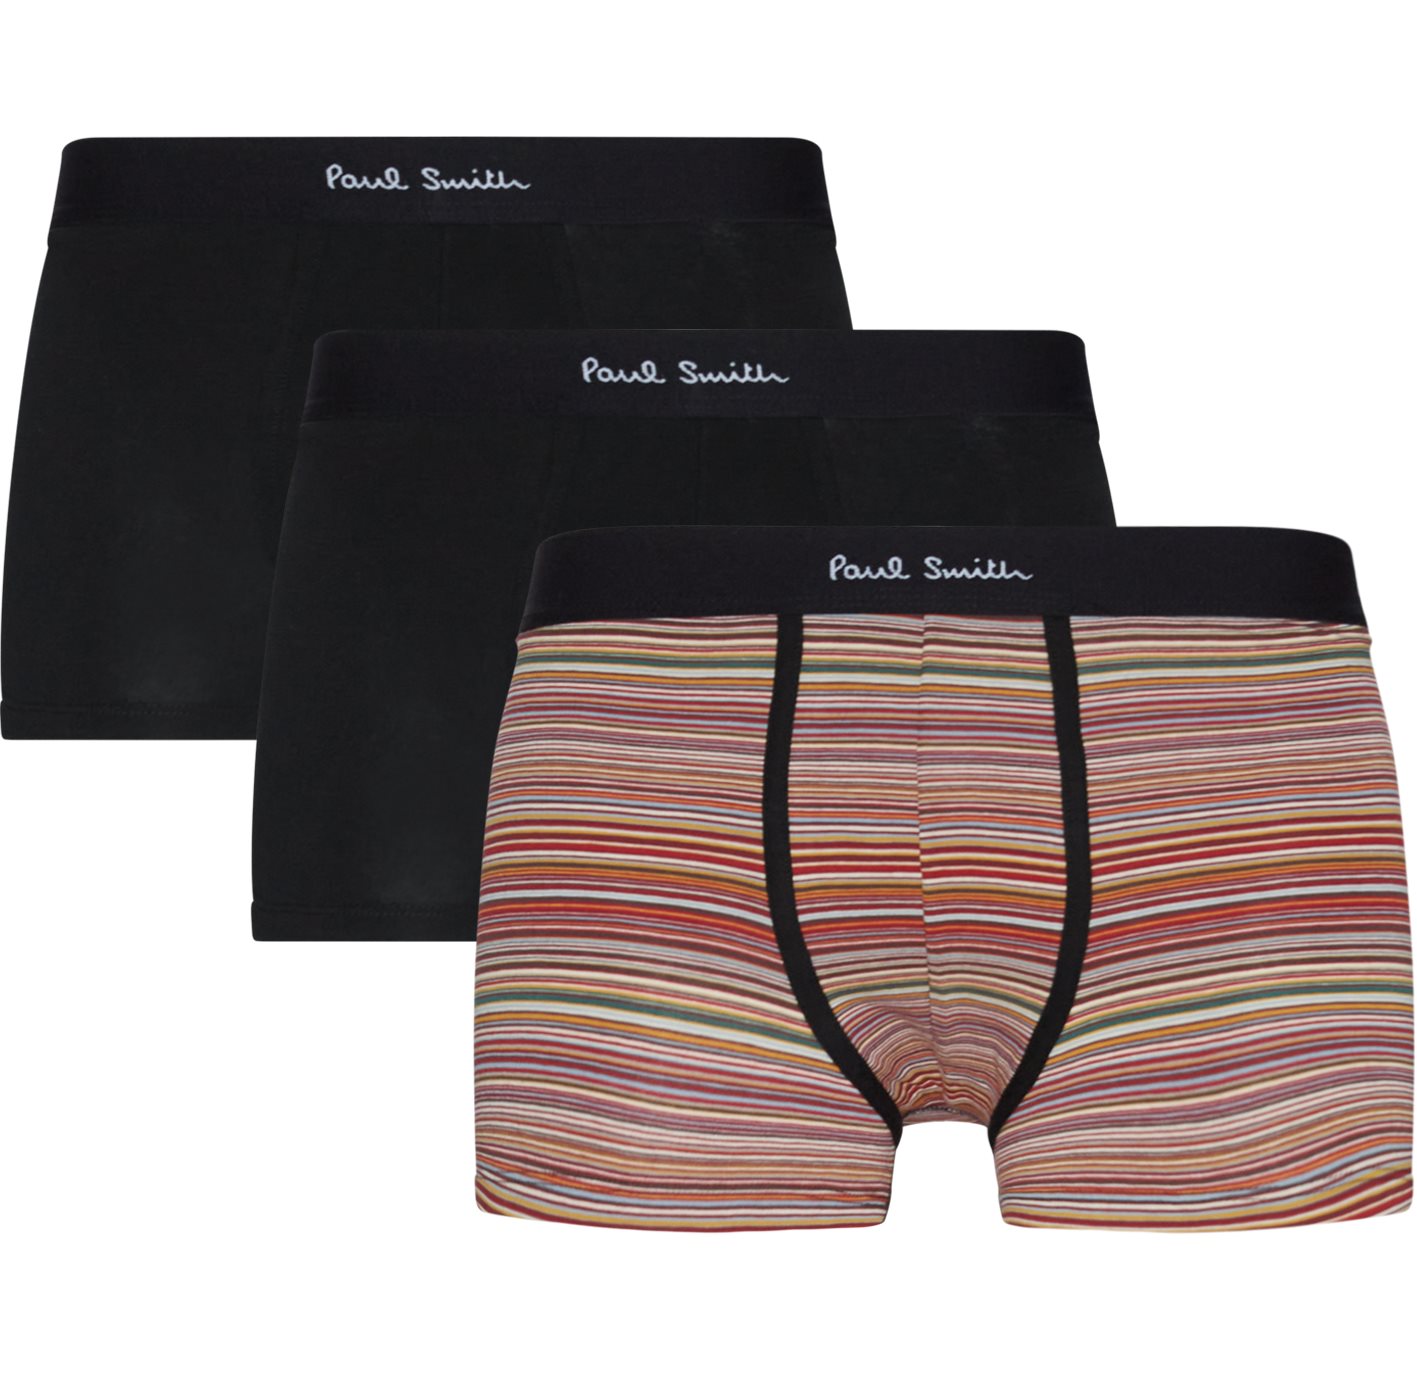 Paul Smith Accessories Underwear 914C A3PCKJ Multi